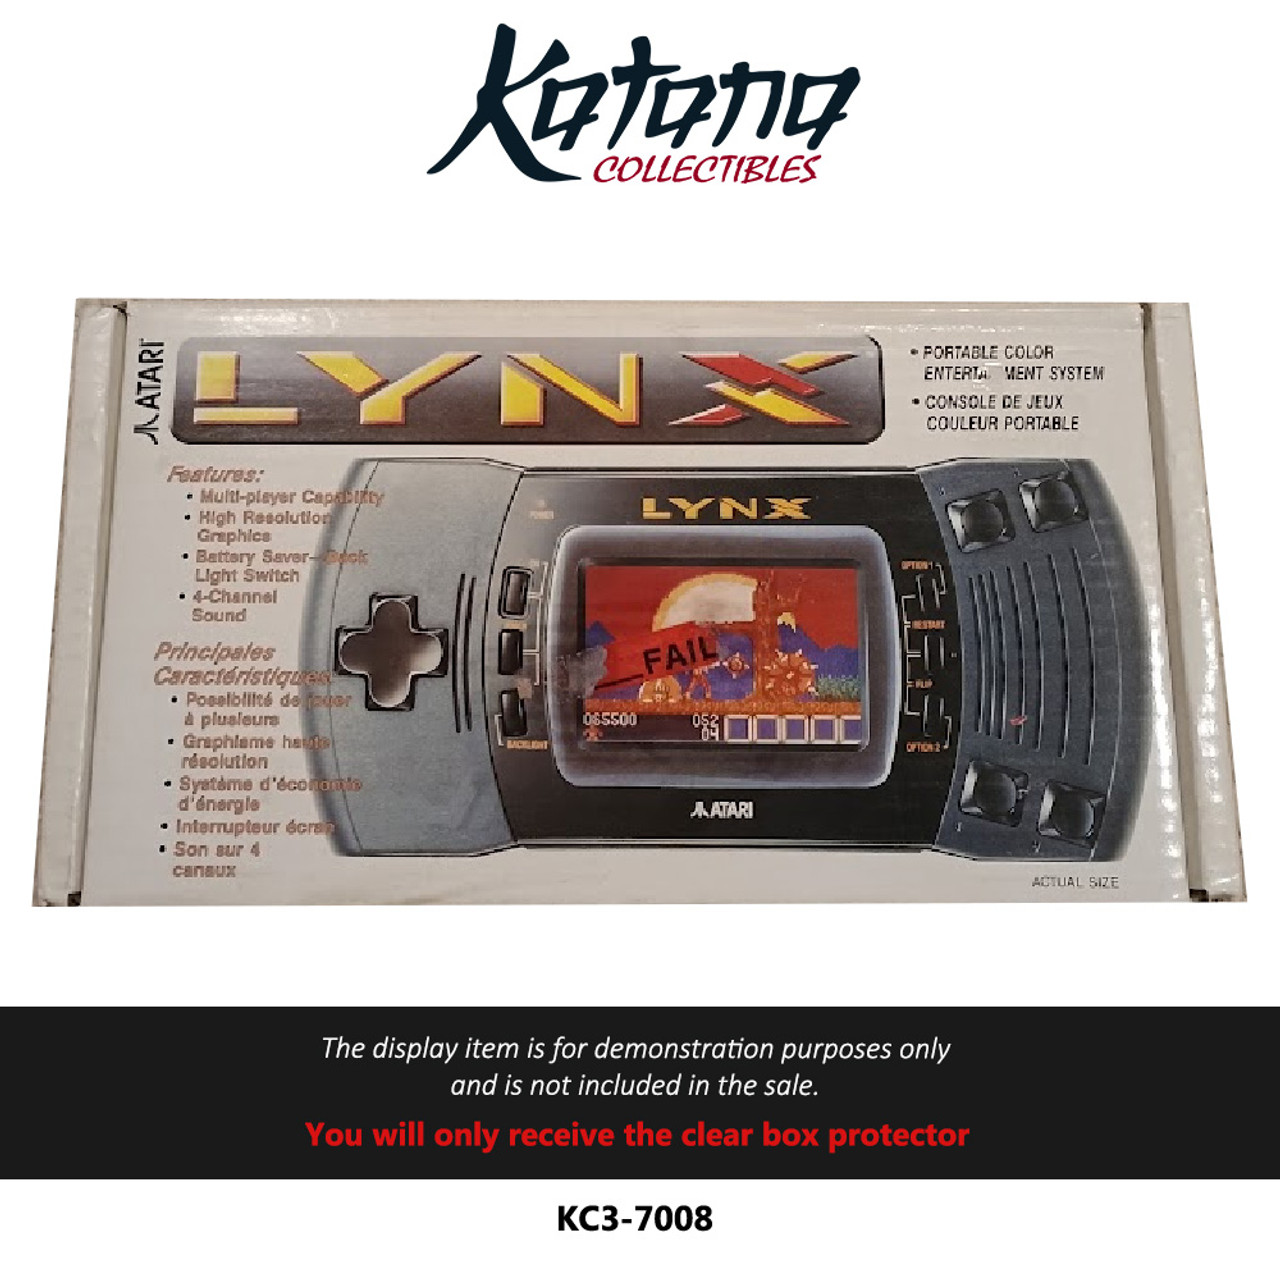 Katana Collectibles Protector For Atari Lynx Console Box Version 2